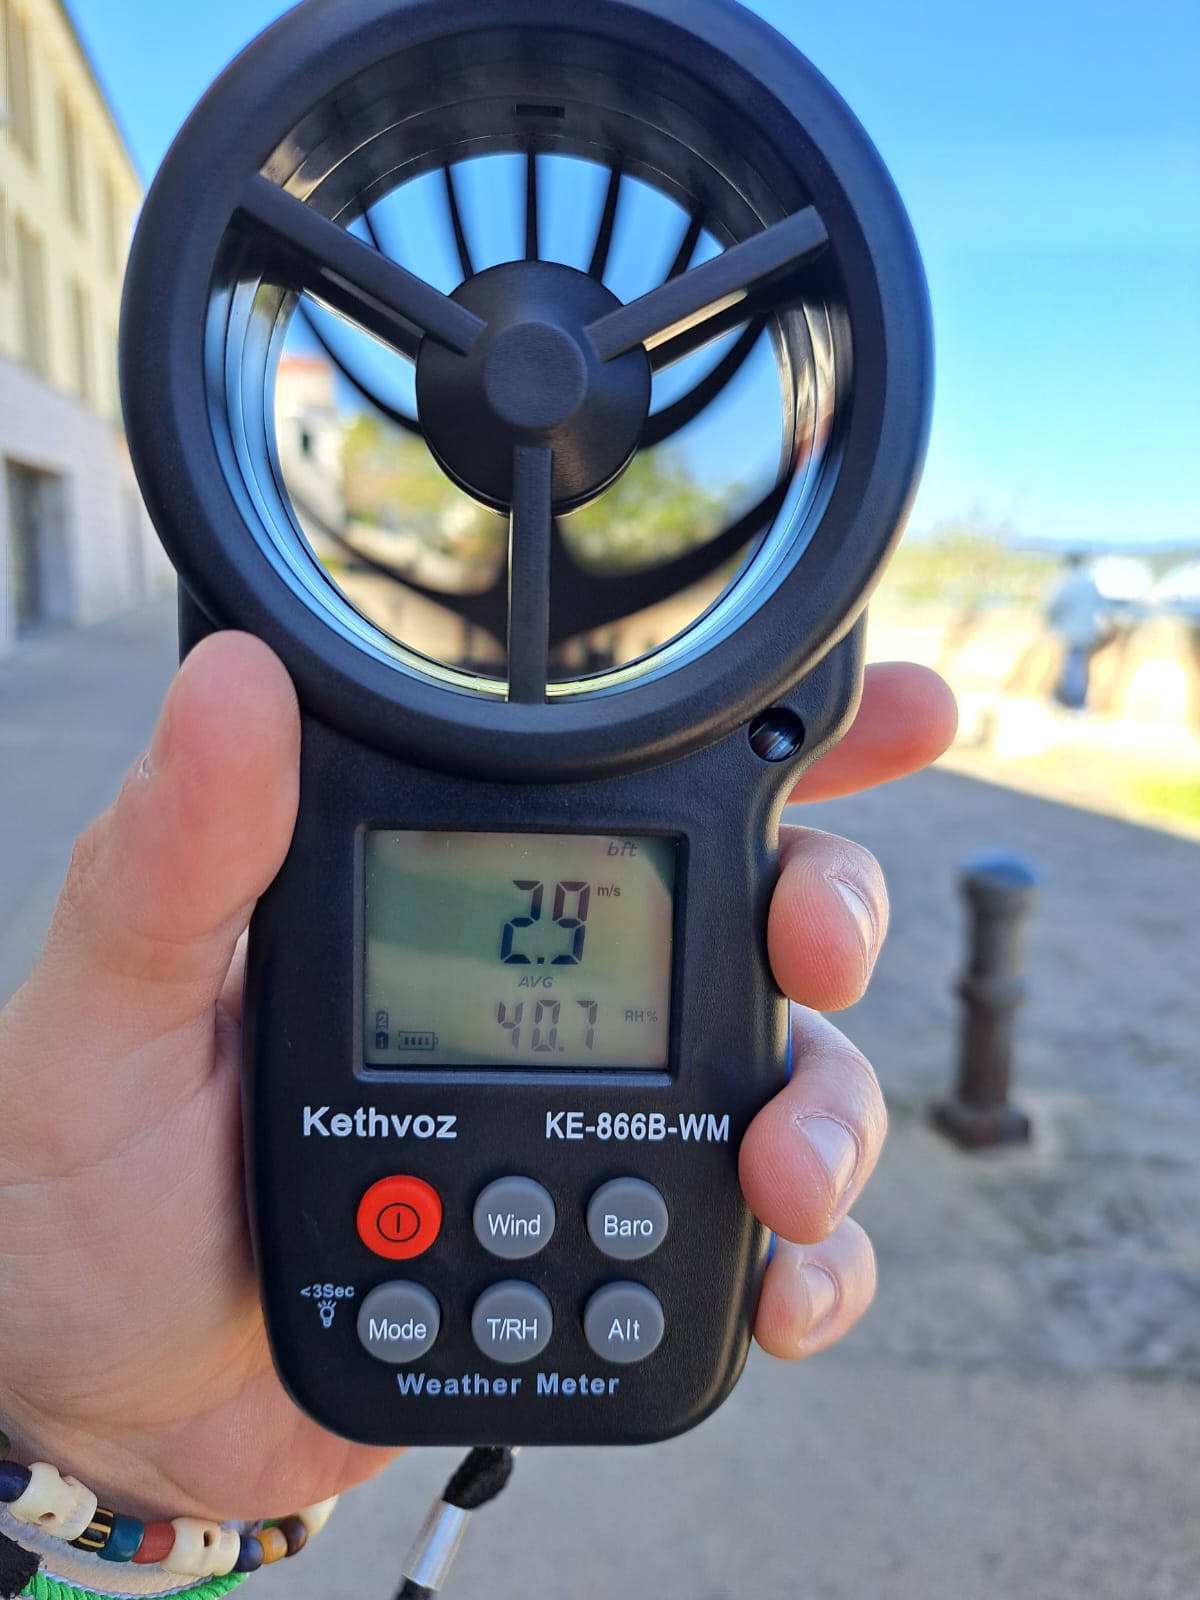 L’APB realitza mesuraments acústics al port de Maó durant l’estada del Ciudad de Granada